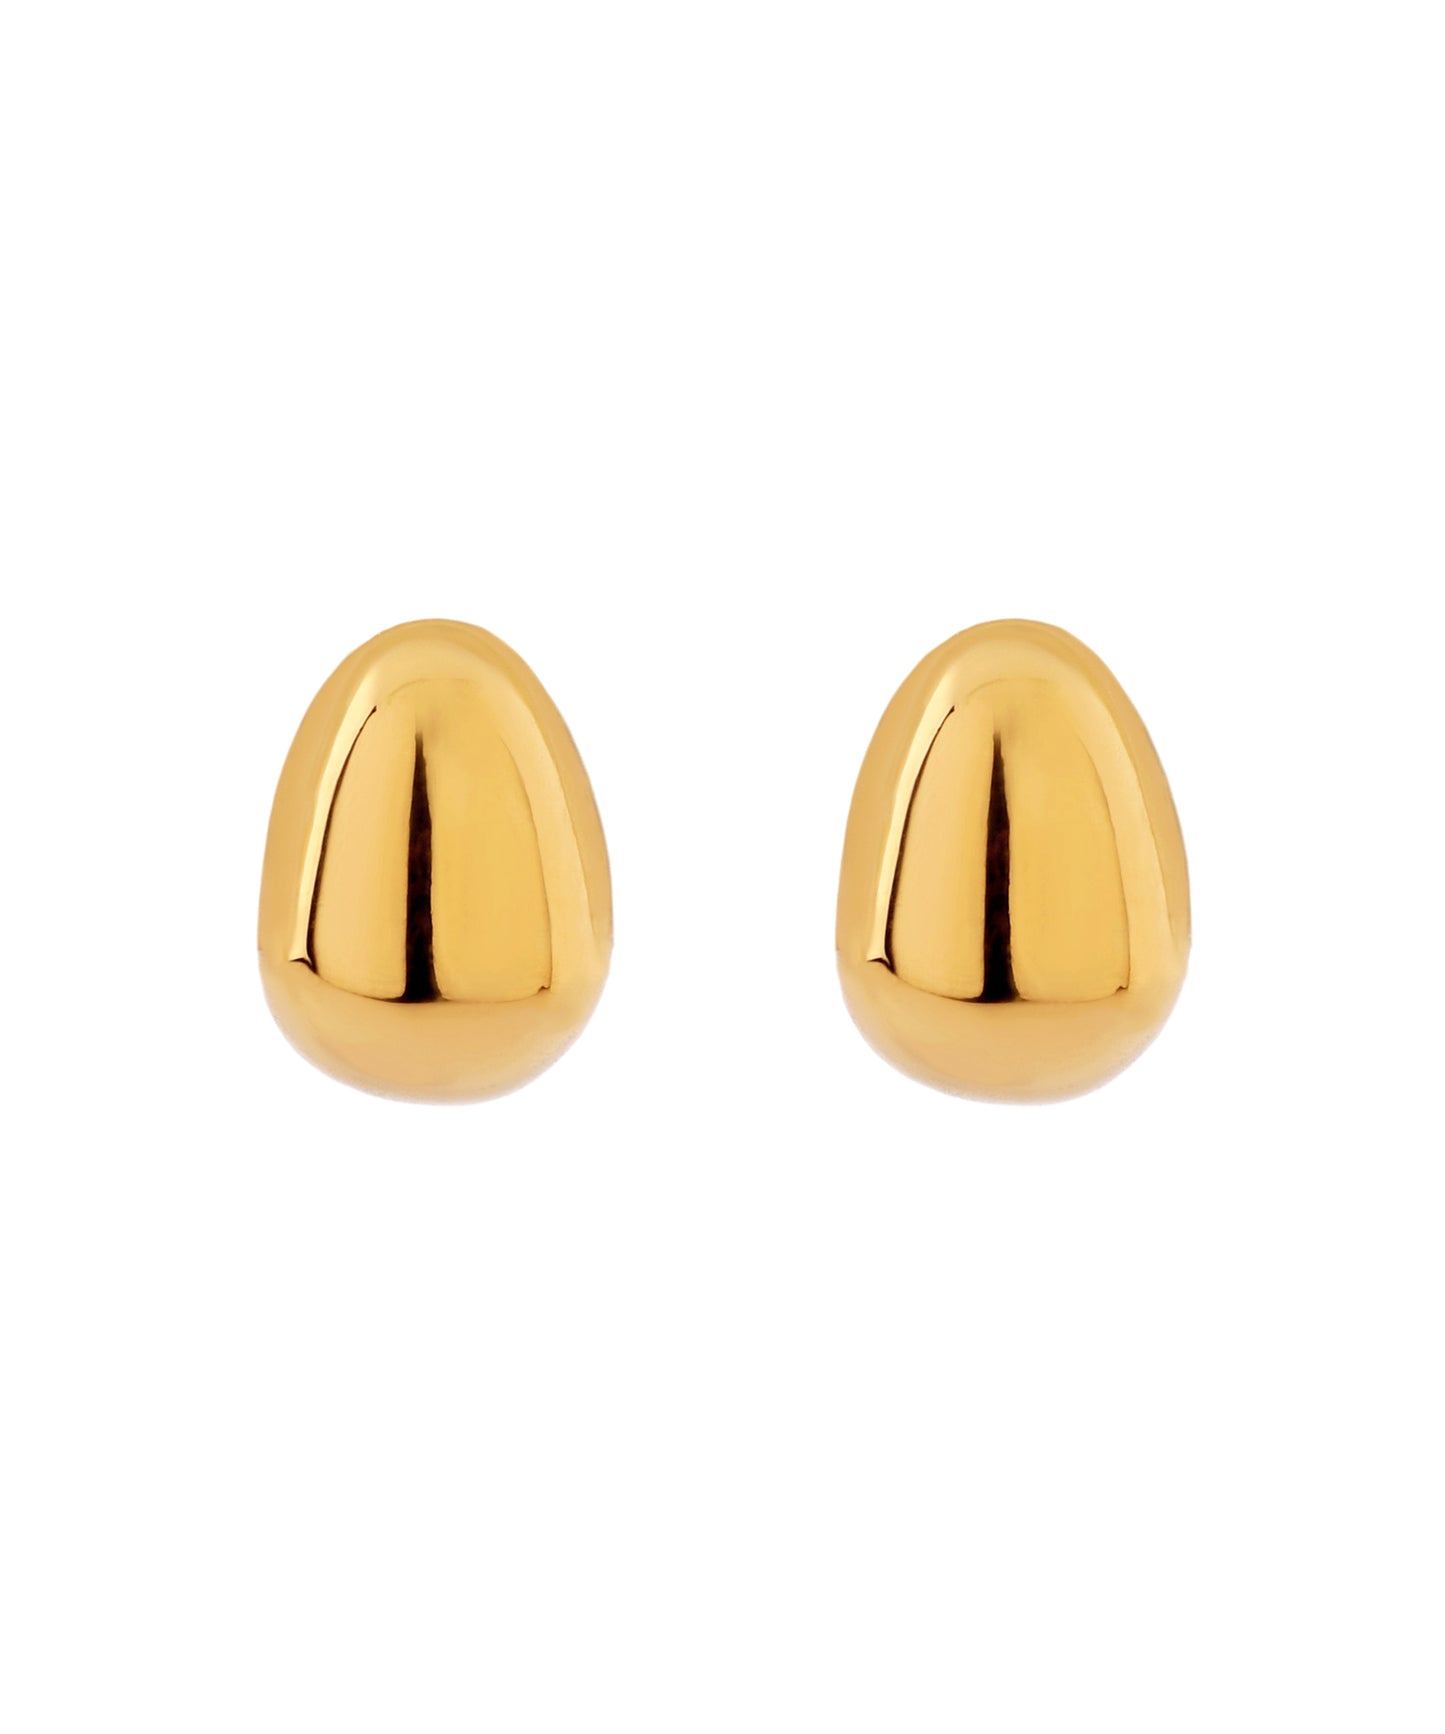 【Stainless Seel IP】 Oval Earrings